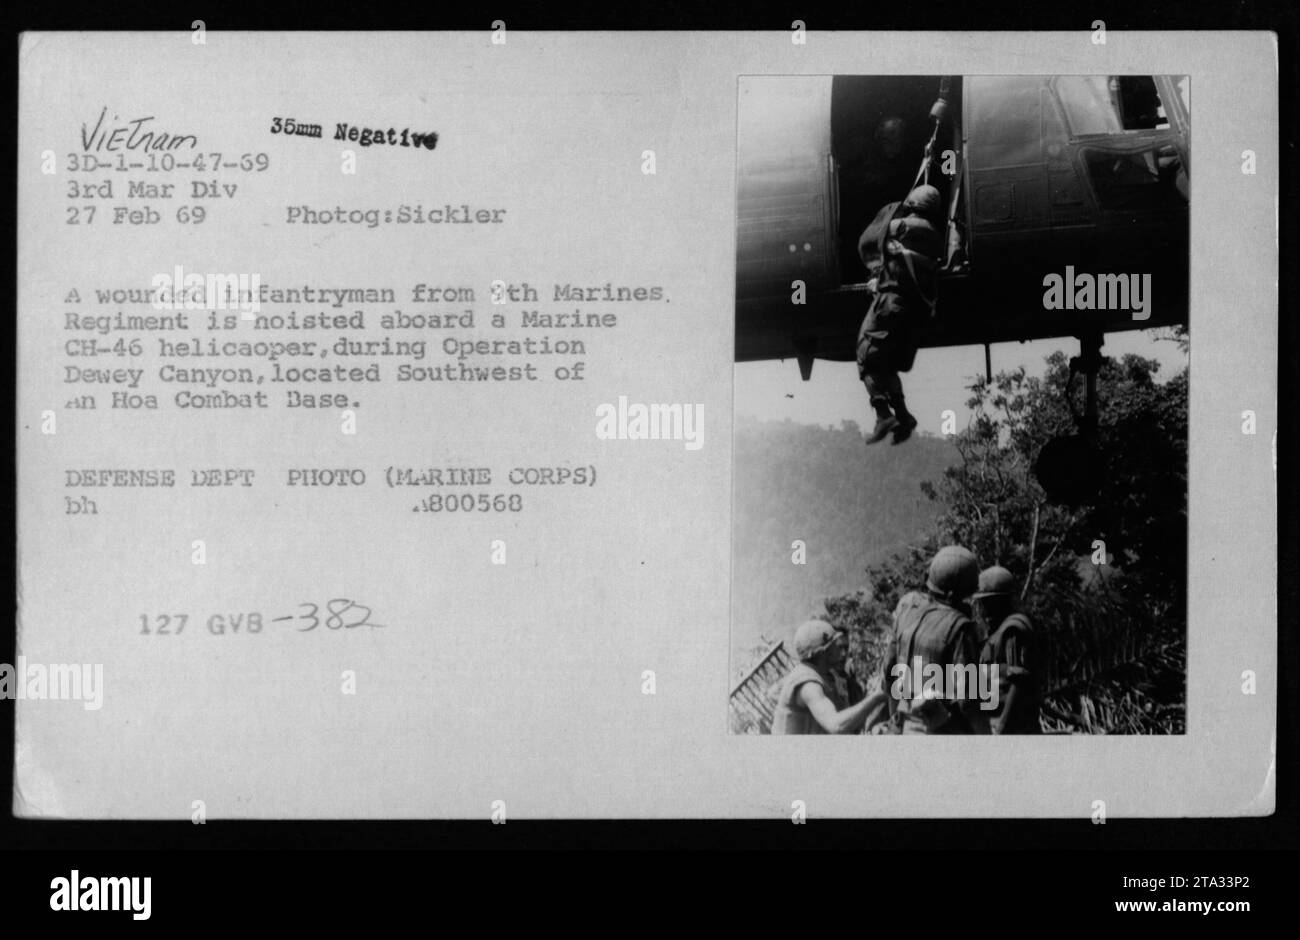 Ein verwundeter Infanterie des 9. Marines-Regiments wird während der Operation Dewey Canyon an Bord eines CH-46 Hubschraubers der Marine gehoben. Die Operation fand am 27. Februar 1969 im Rahmen der Aktivitäten der 3. Marine-Division südwestlich einer Hoa Combat Base statt. Dieses Foto wurde von Sickler aufgenommen und ist ein 35-mm-negativ. Es ist ein Foto des Verteidigungsministeriums (Marine Corps) mit dem Identifikationscode BH 1800568 127 GVB-382. Stockfoto